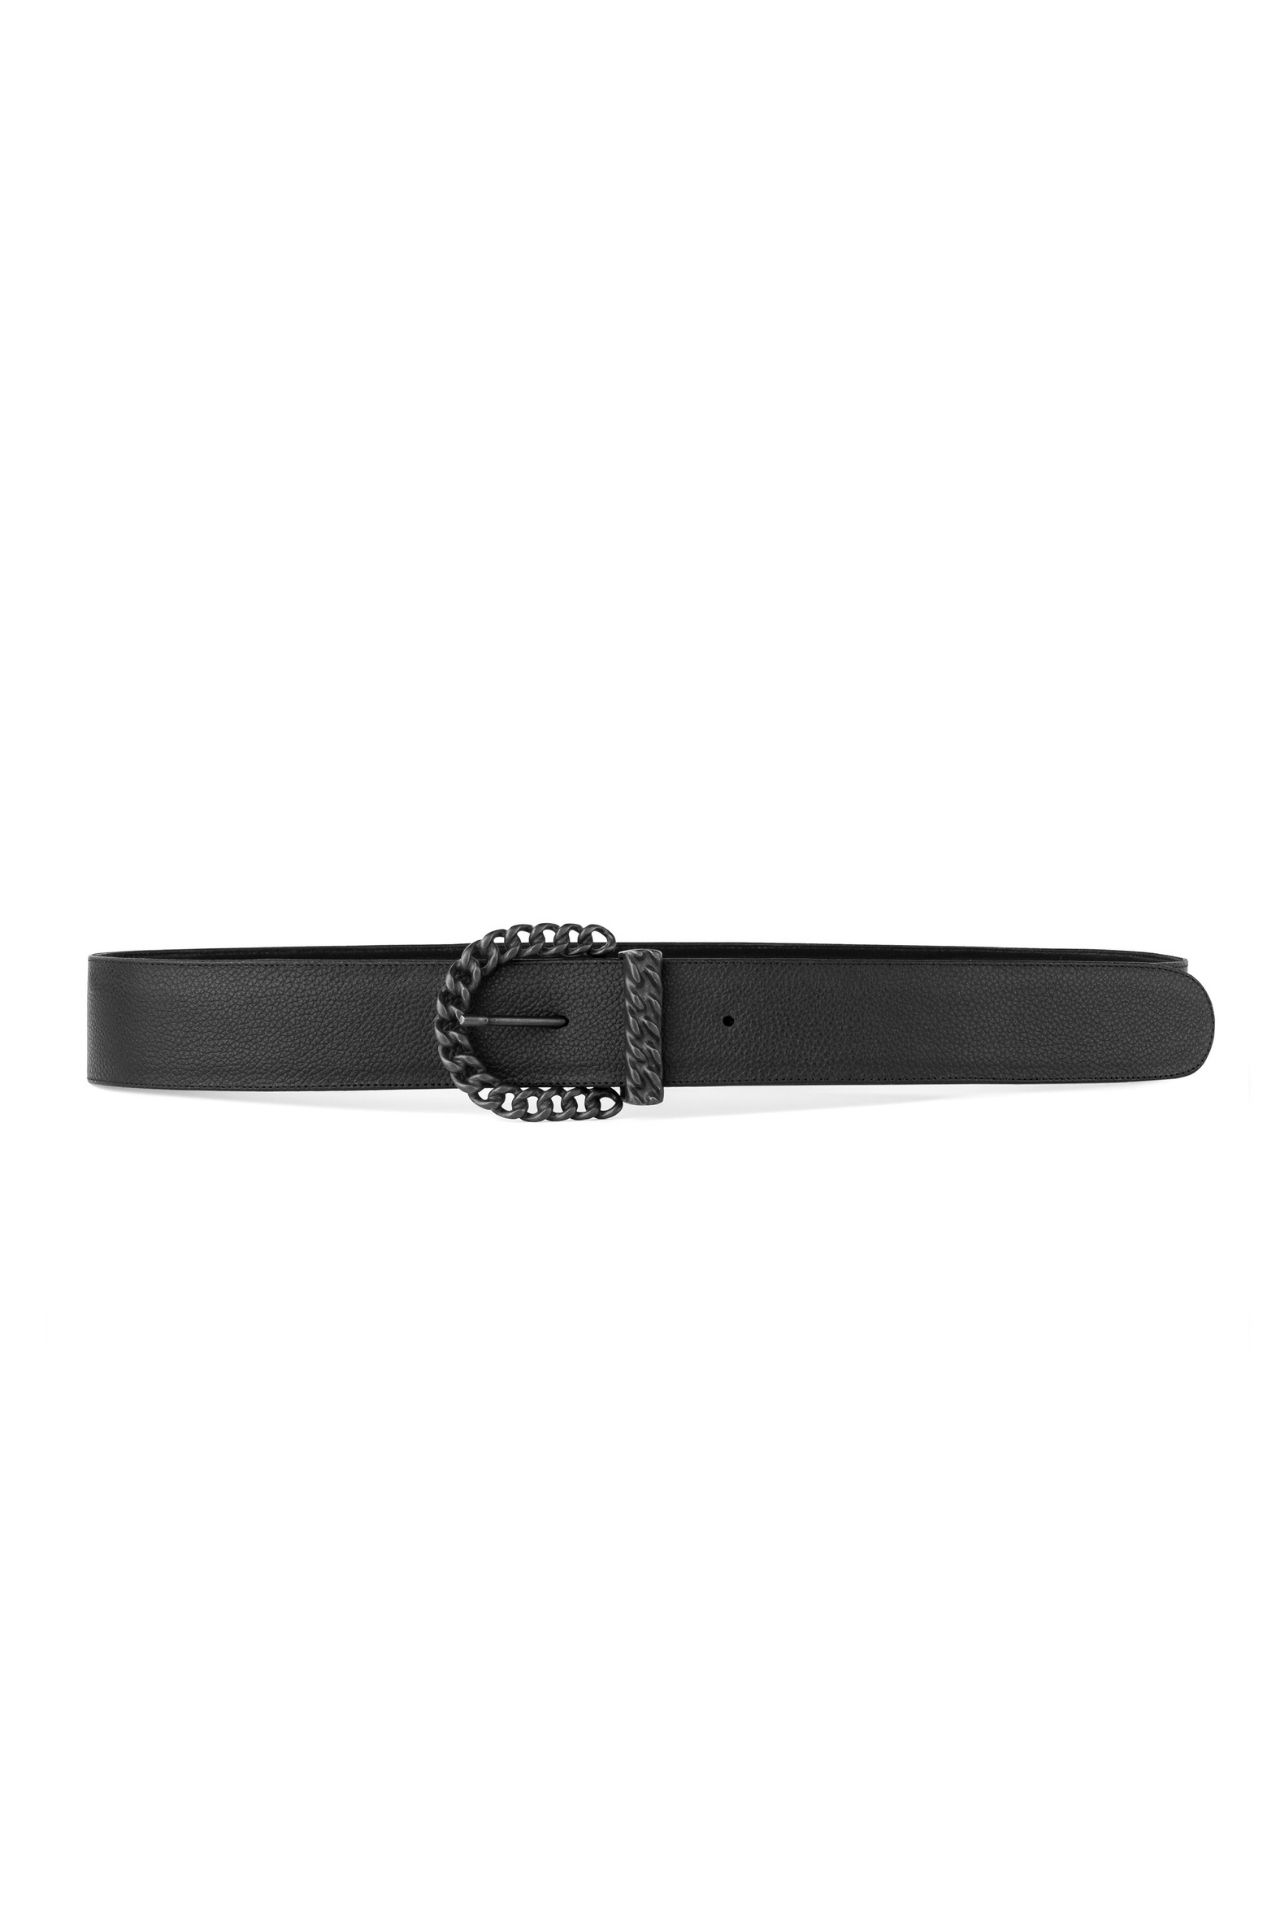 Un cinturón negro es una pieza básica del guardarropa. Es un accesorio capaz de elevar el look más casual y ser protagonista en un outfit elegante.
